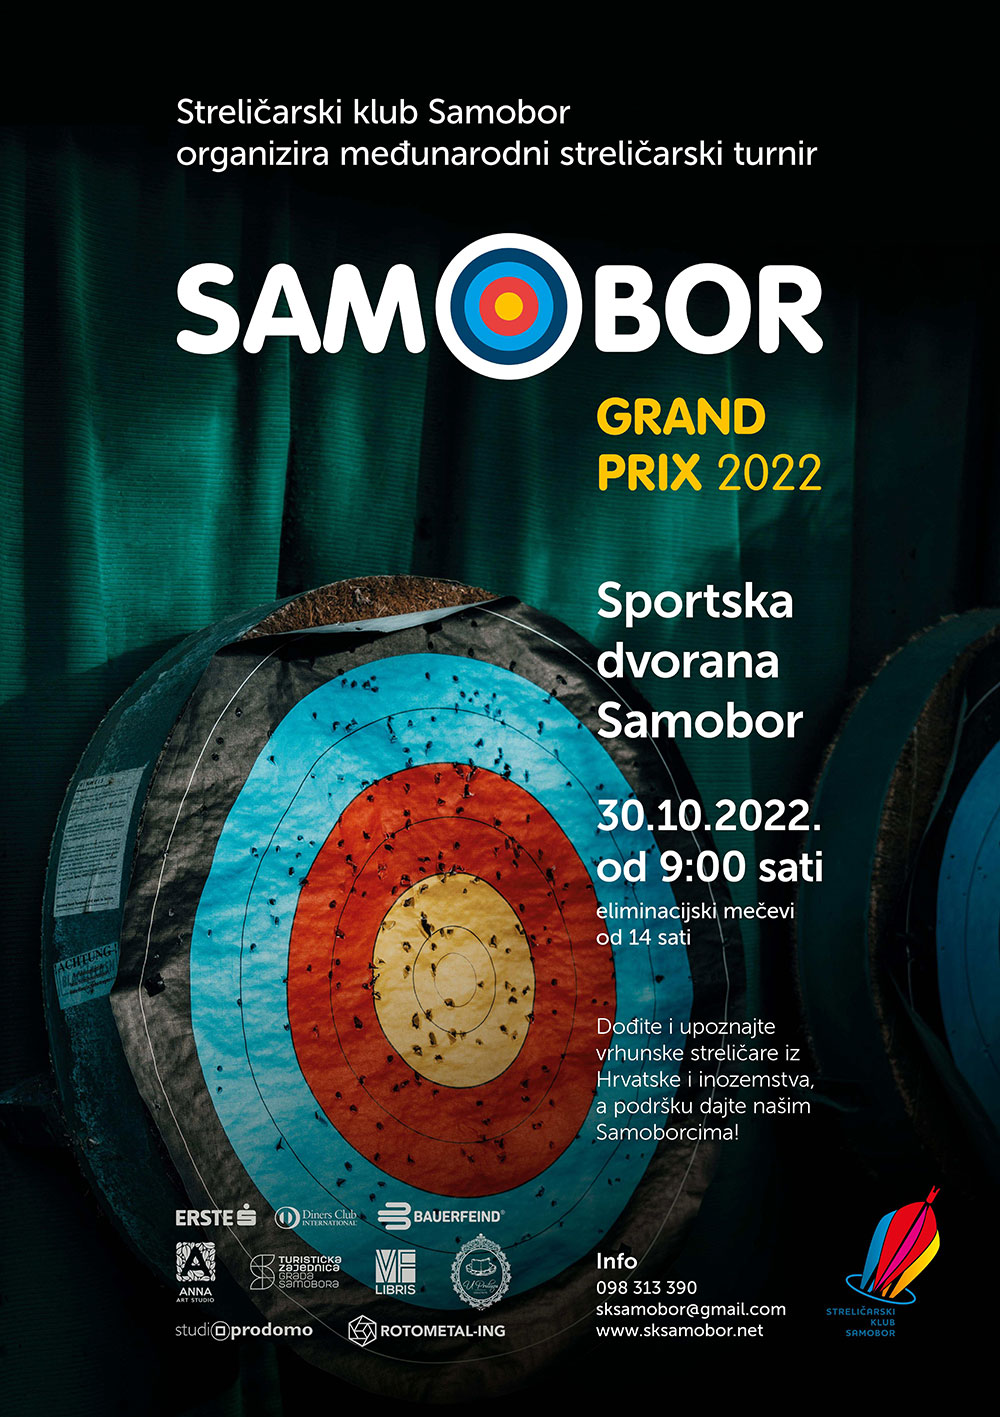 Najava Meunarodnog streliarskog turnira Samobor Grand Prix 2022